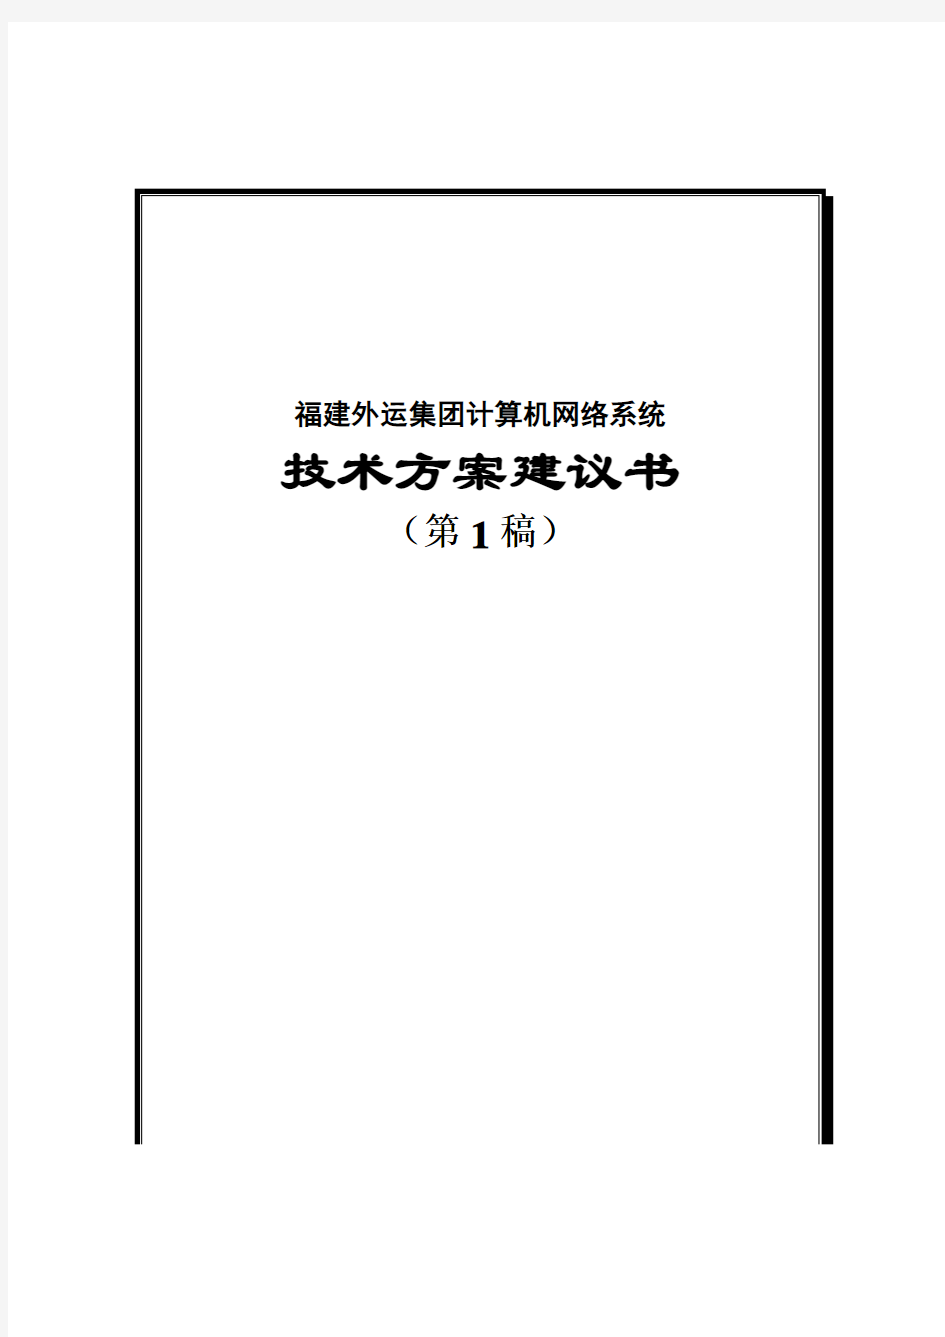 计算机网络系统技术策划方案(doc 23页)